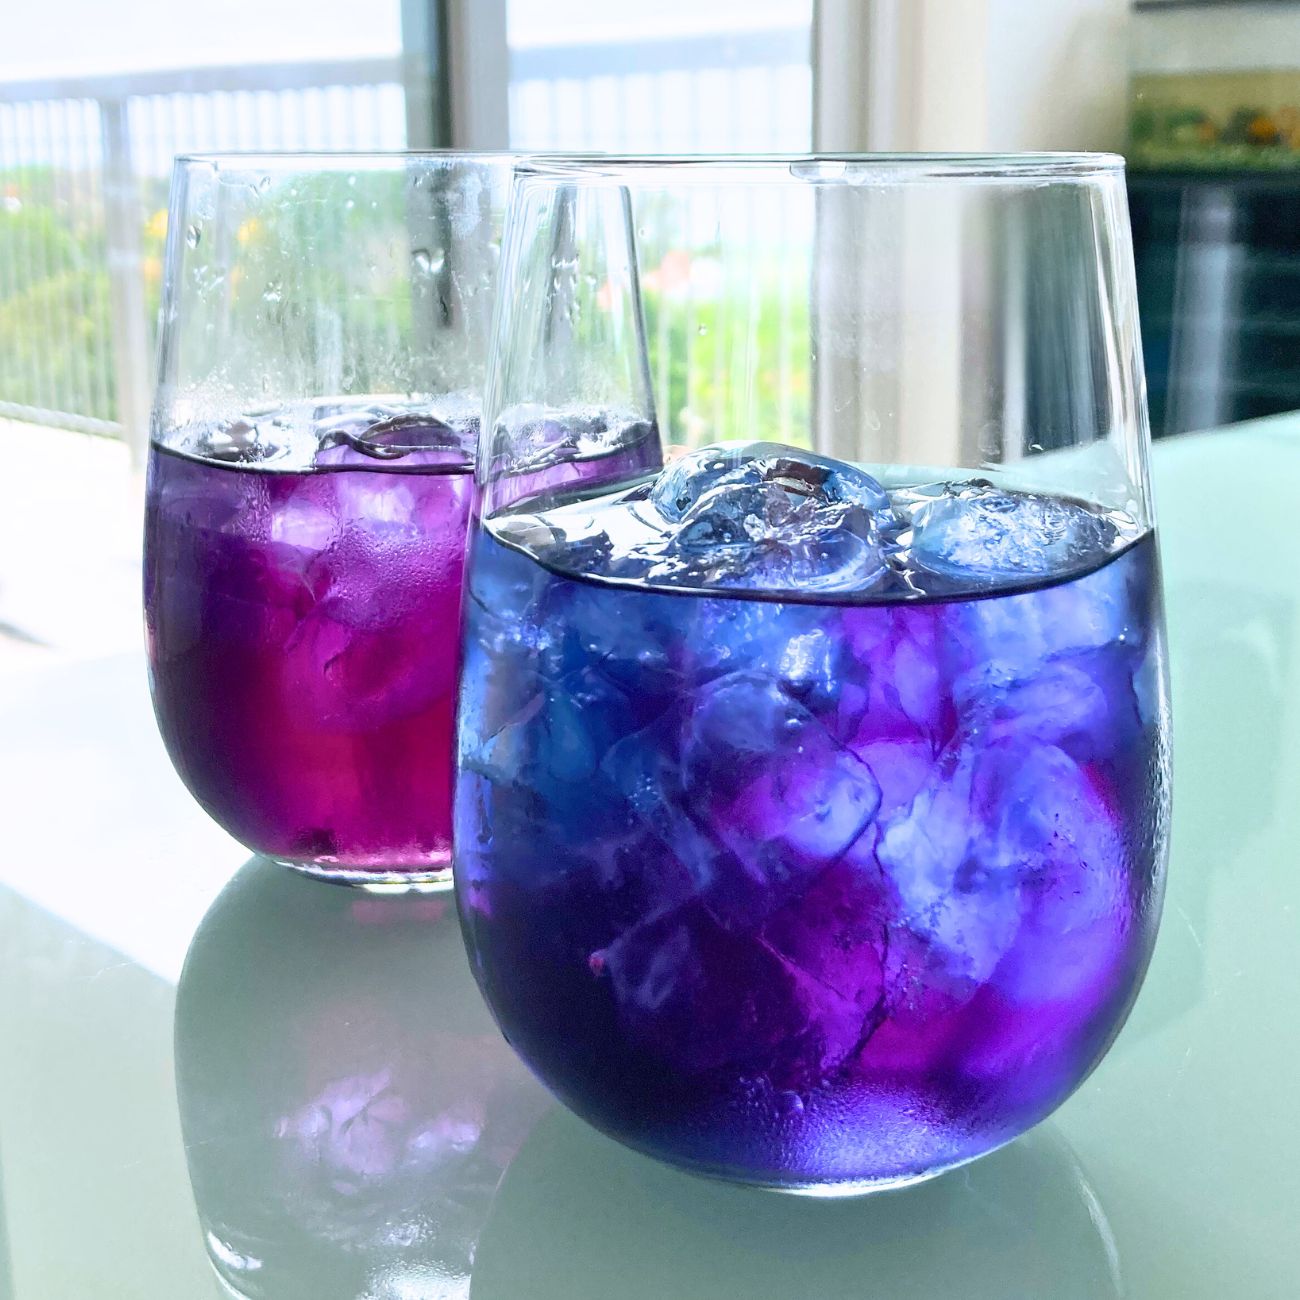 Blueberry Butterfly Tea | Butterfly Pea Flower Tea - ultraviolet tea